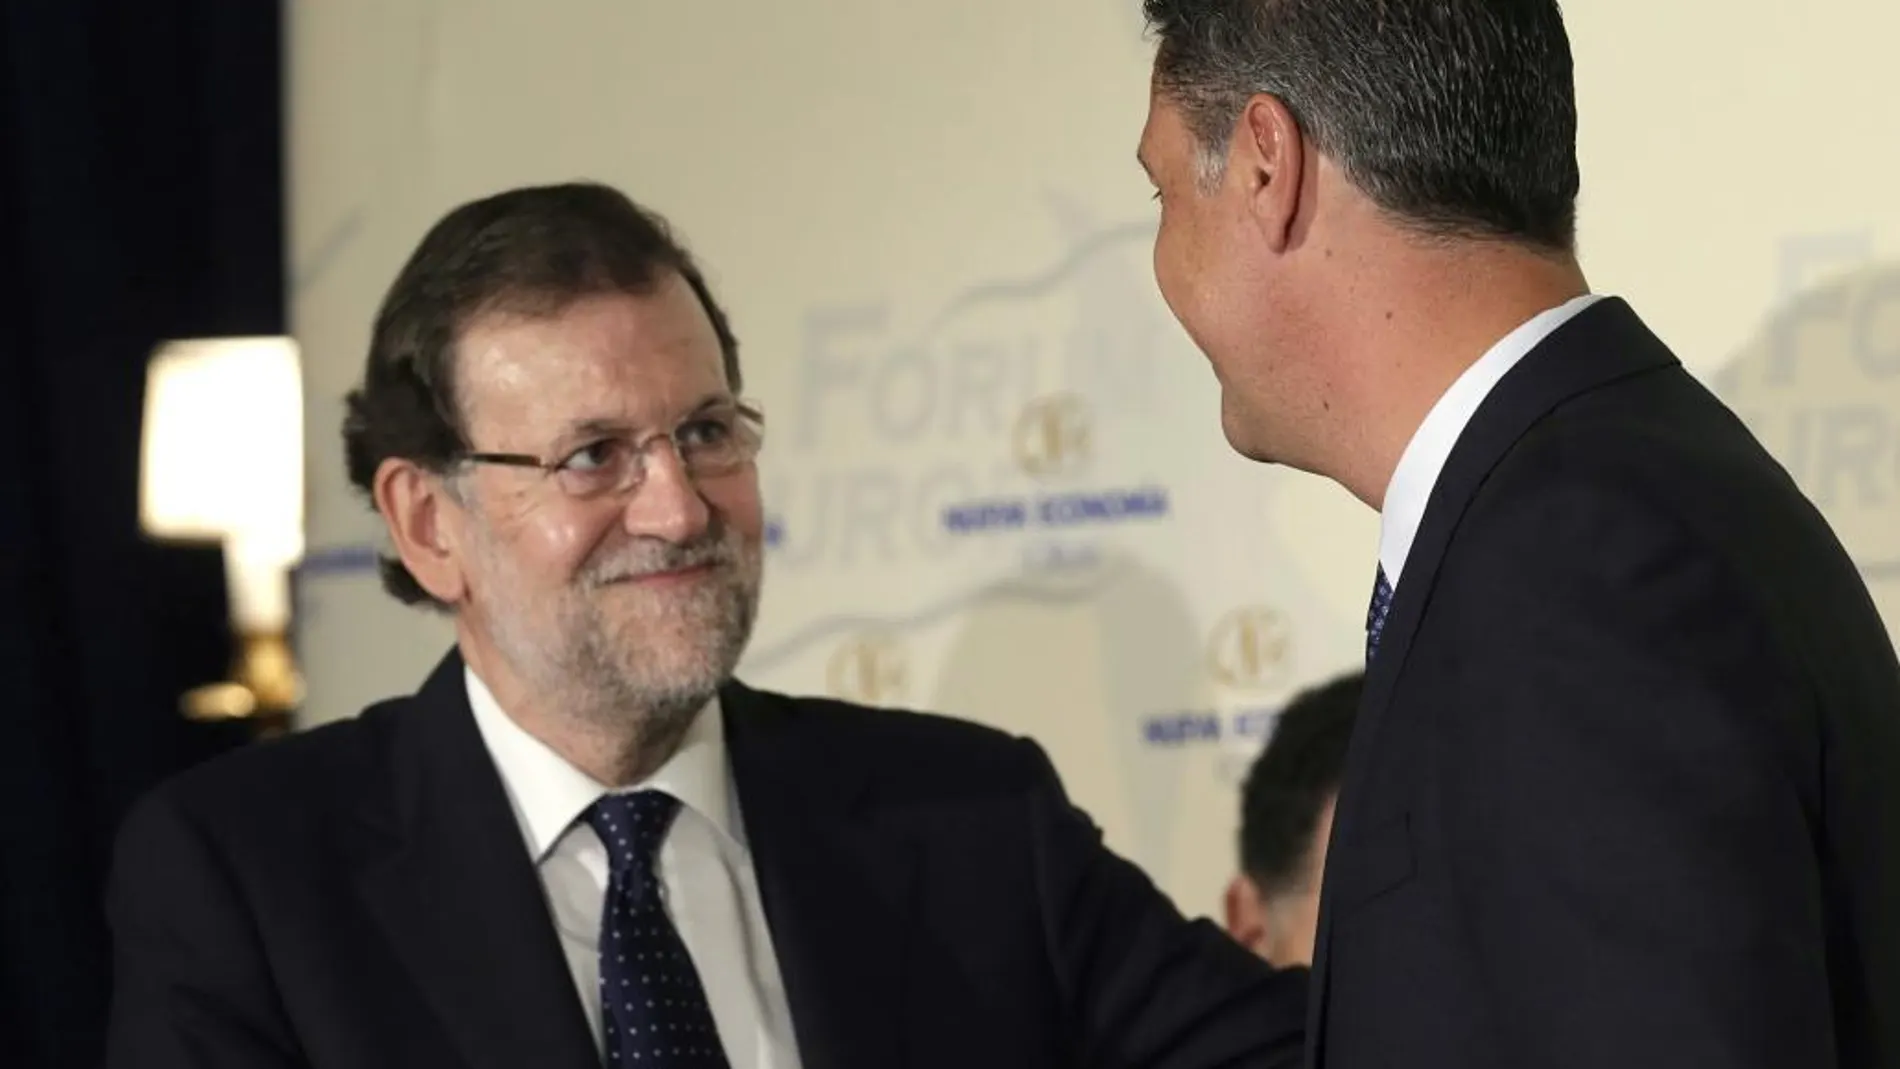 Mariano Rajoy saluda al candidato del PP a la Presidencia de la Generalitat de Cataluña, Xavier Garcia Albiol, a quien ha presentado hoy en el desayuno coloquio Nueva Economía Fórum